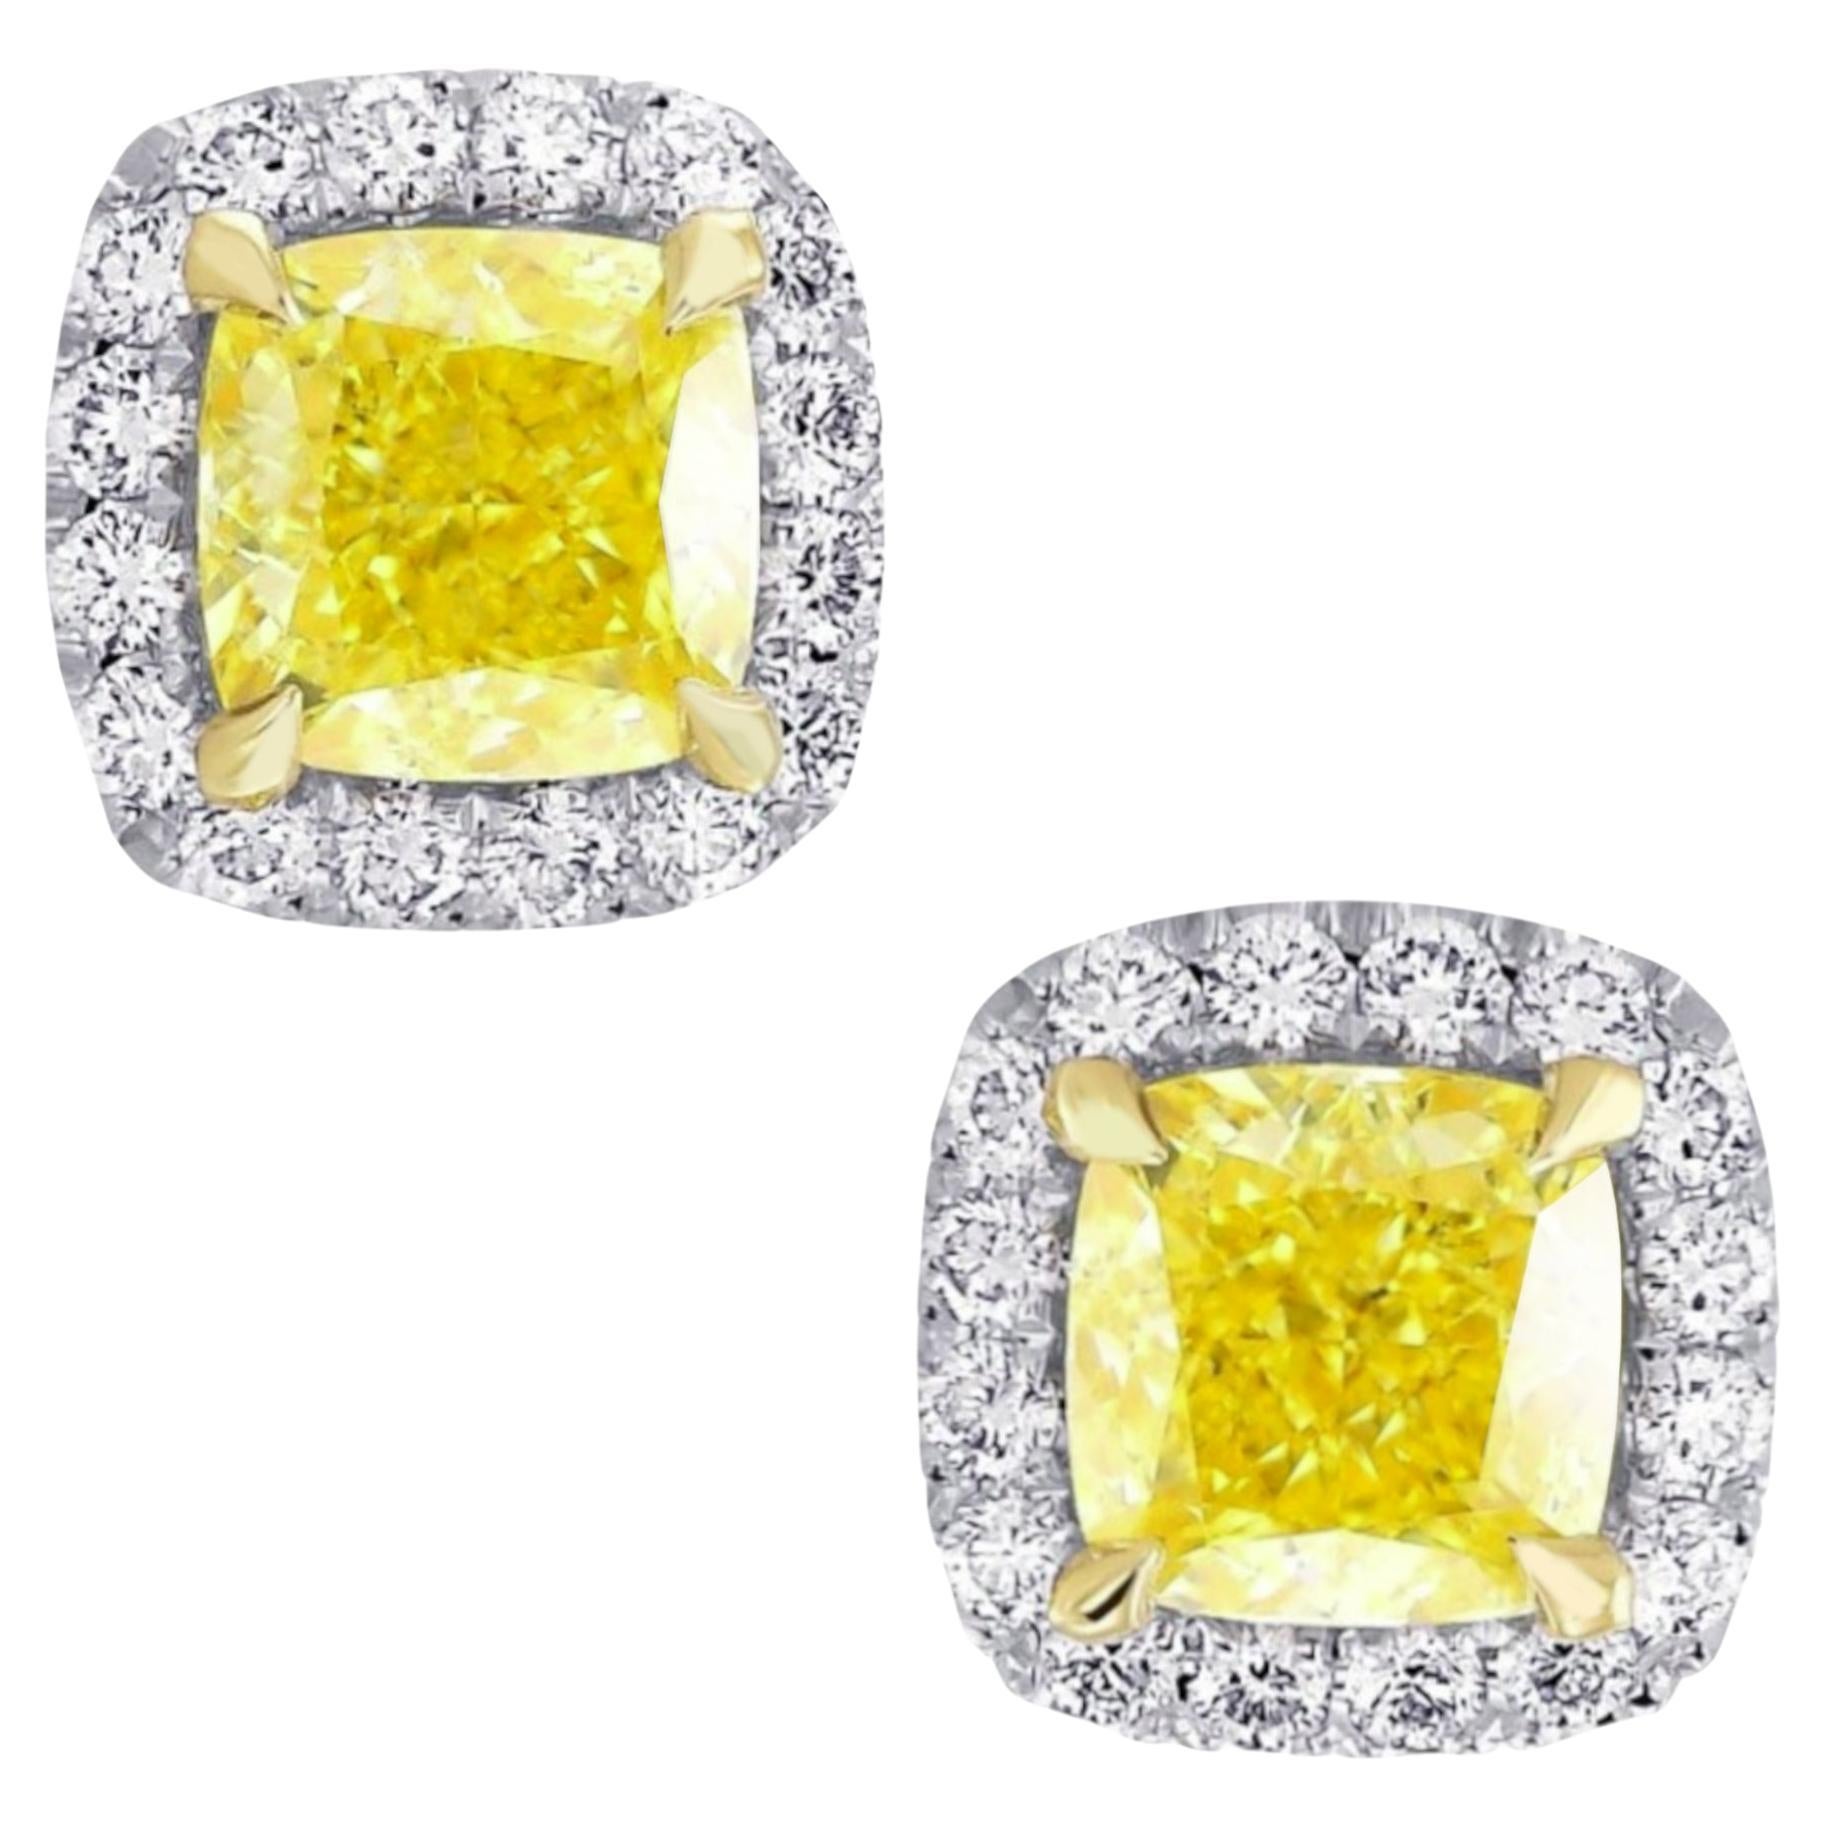 GIA Certified 2 Carat Fancy Yellow Cushion Diamond Gold Studs Earrings